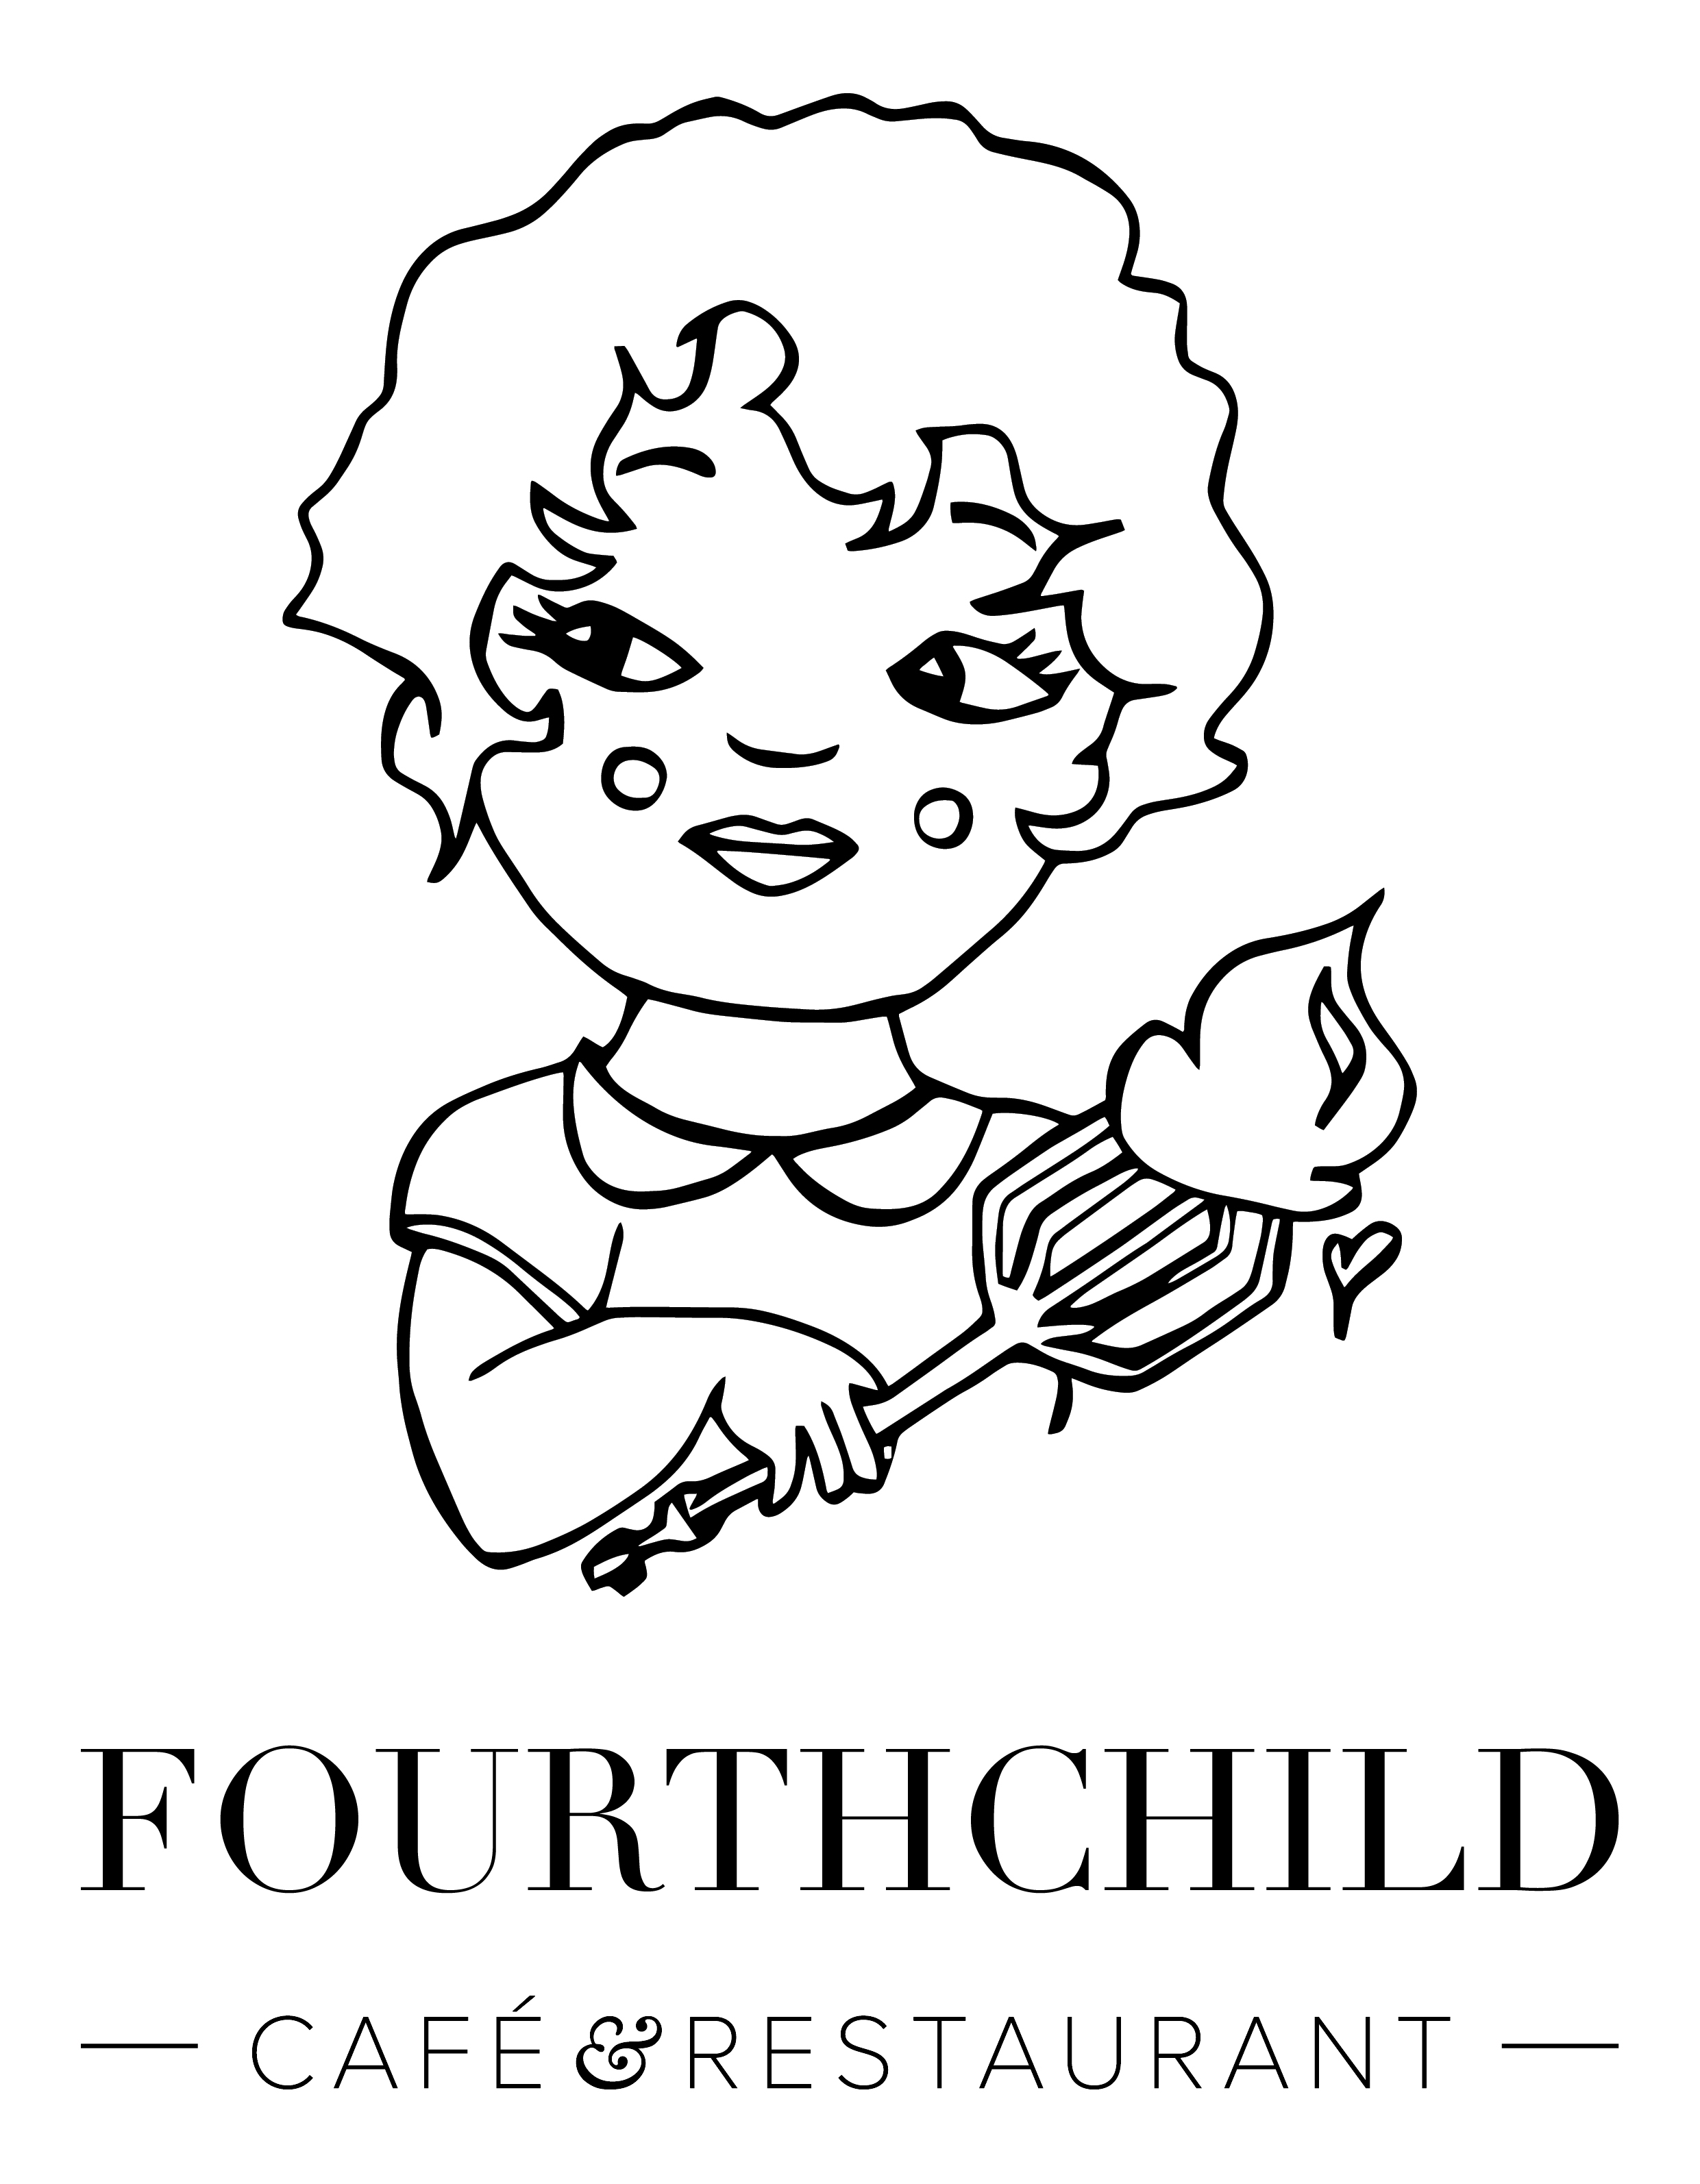 FOURTHCHILD CAFE RESTAURANT